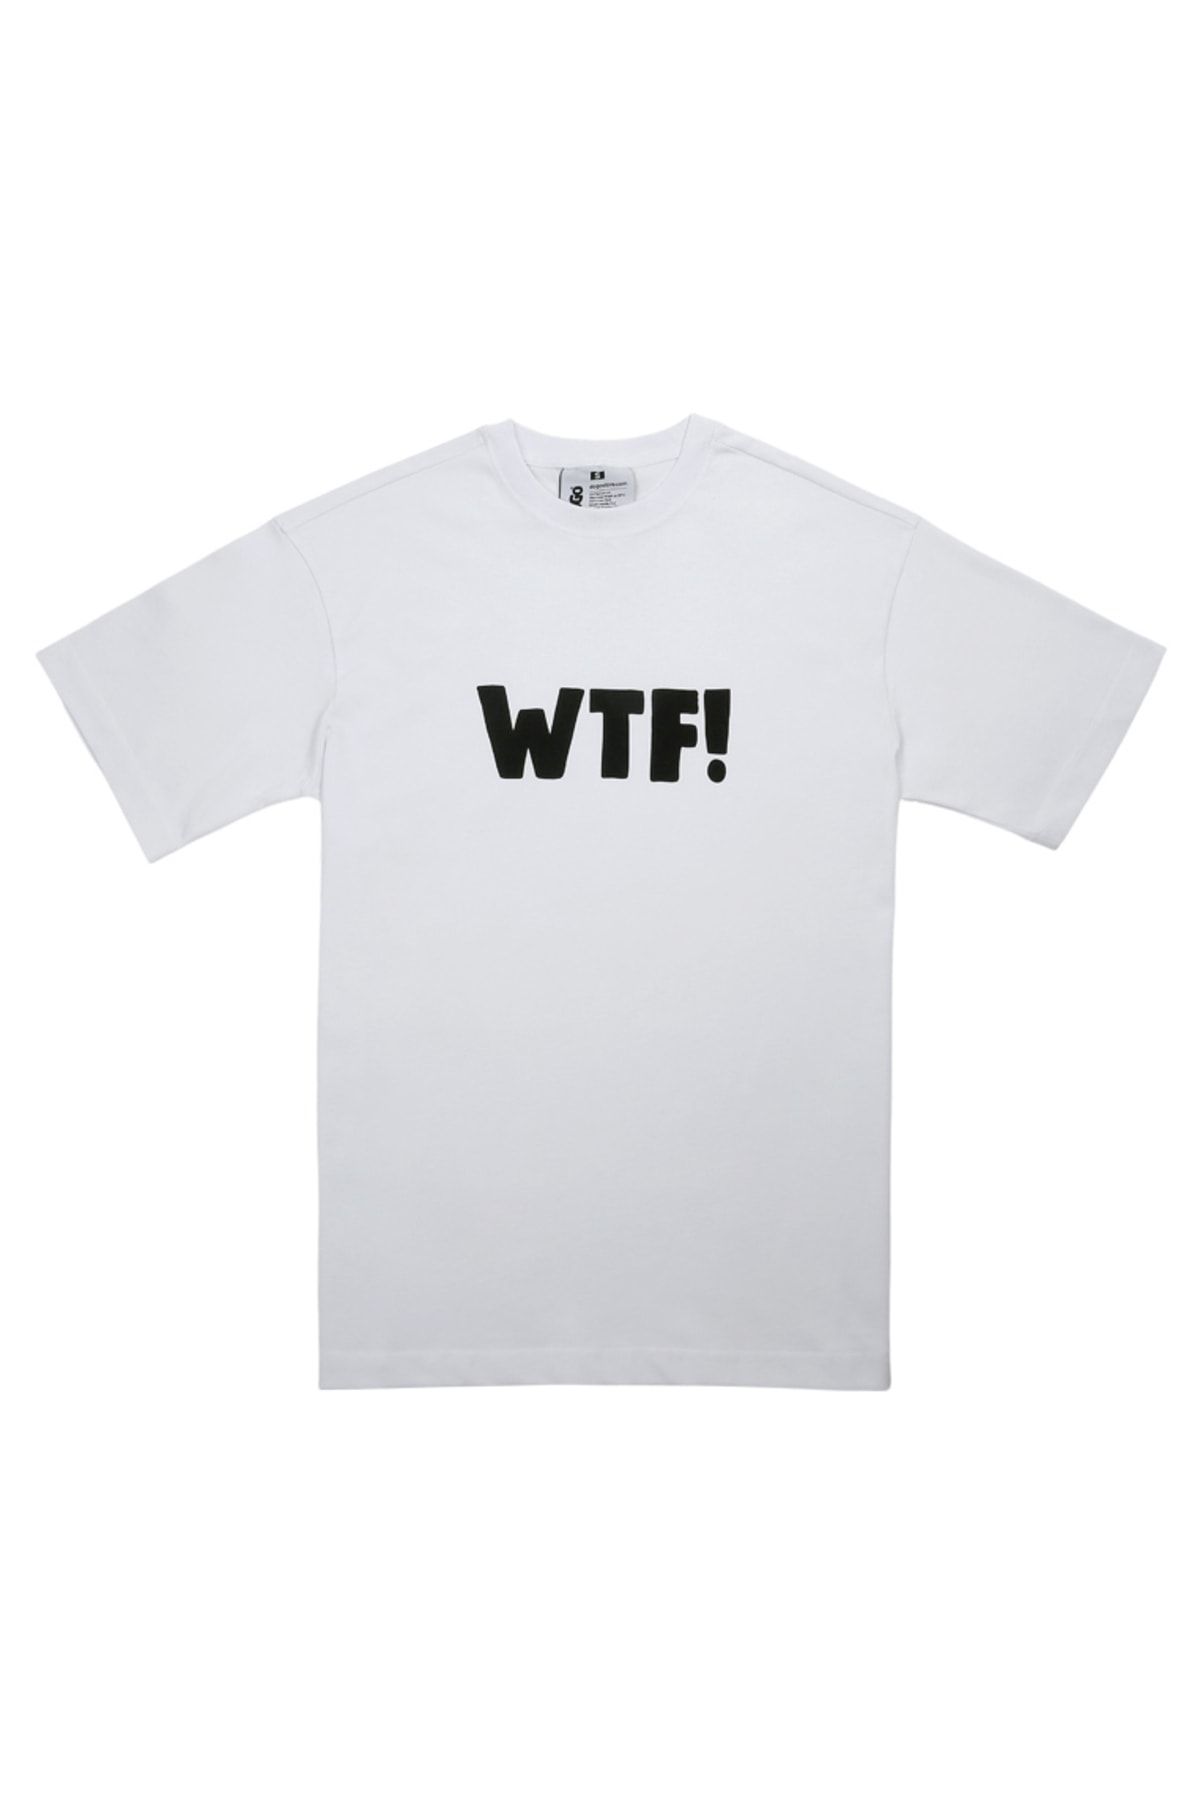 Dogo Unisex Vegan Beyaz T-shirt - Wtf Tasarım